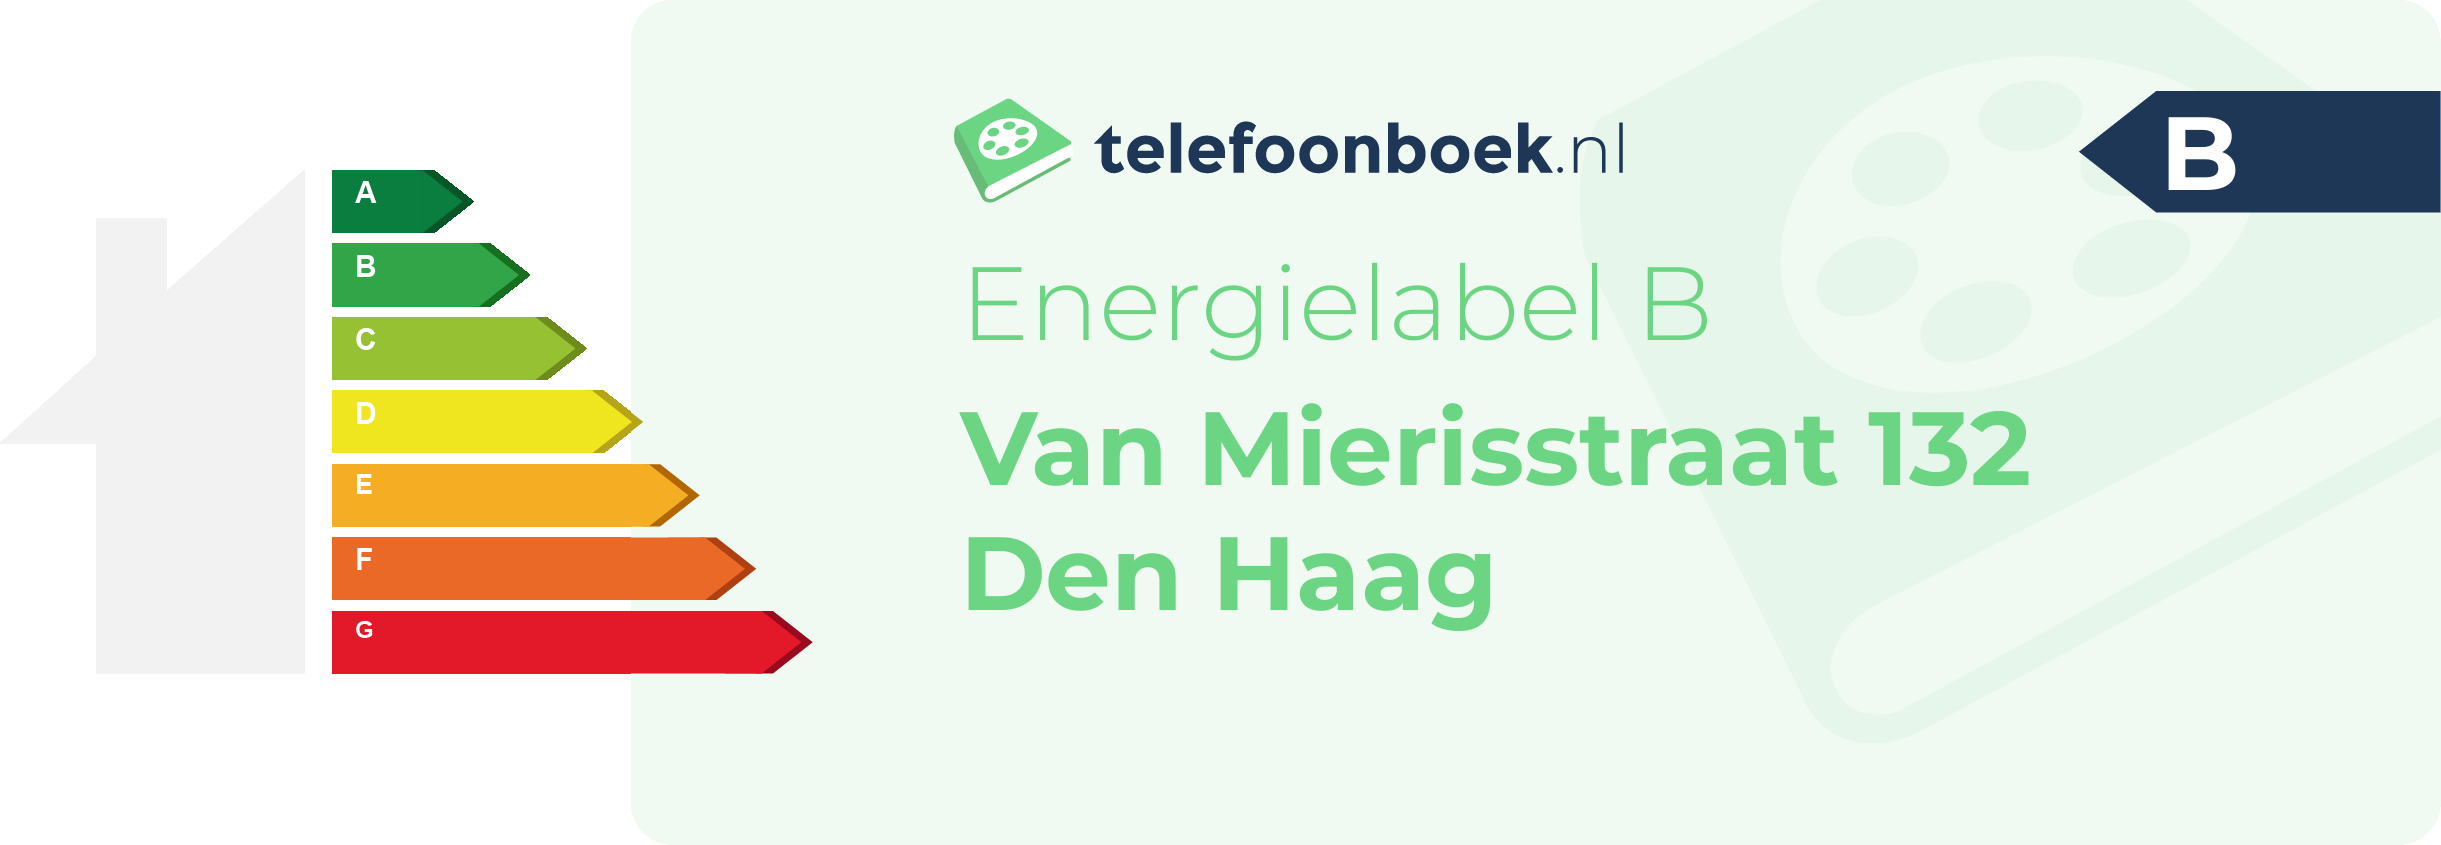 Energielabel Van Mierisstraat 132 Den Haag